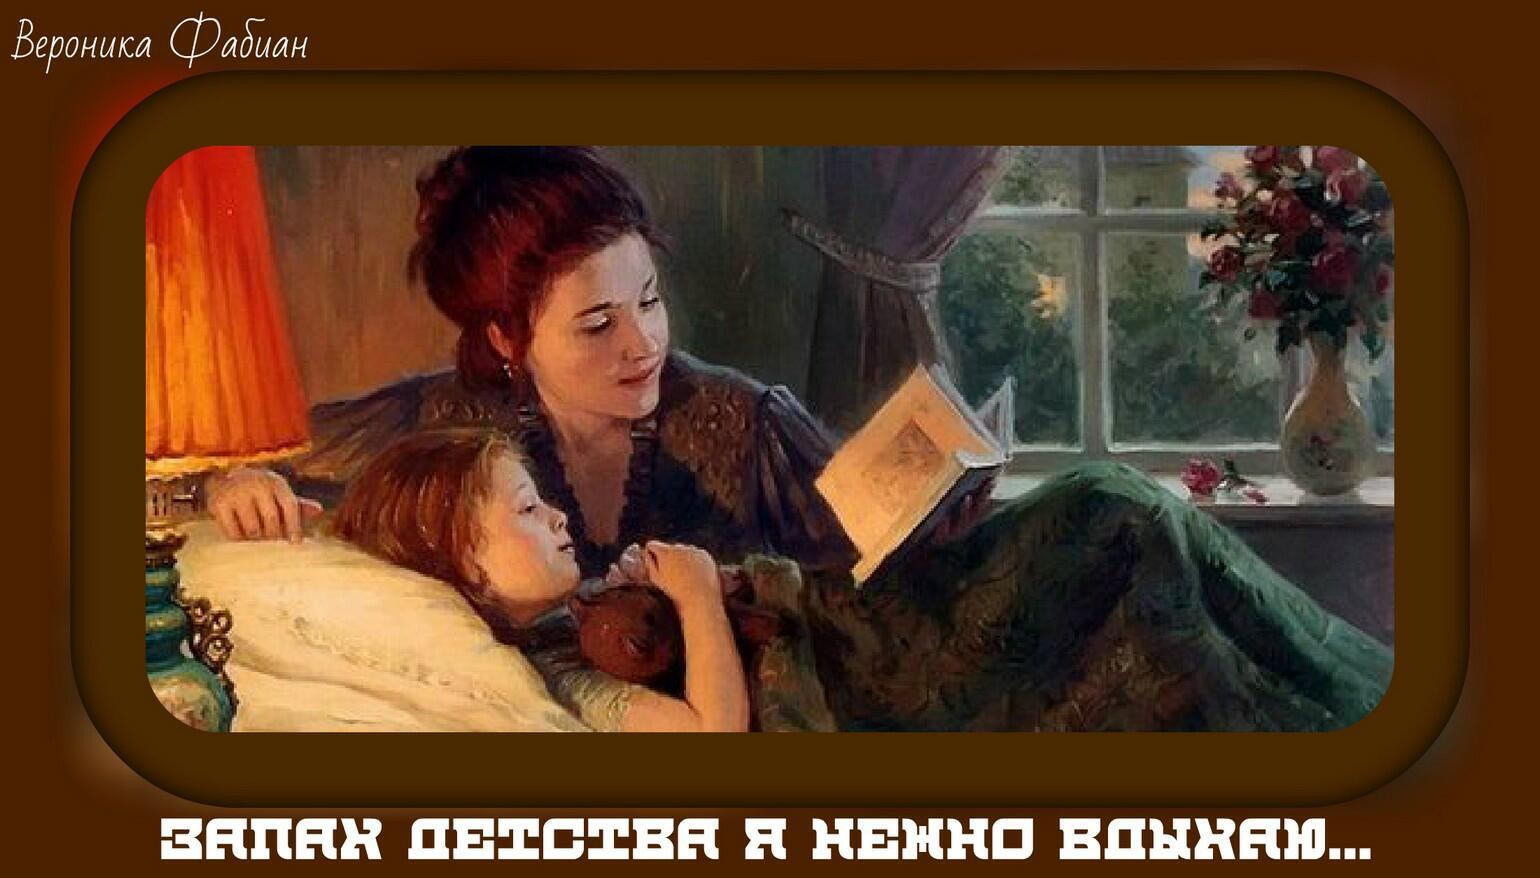 Сестра матери читать. Мама рассказывает сказку. Чтение в живописи. Мама читает сказку. Читающие дети в живописи.